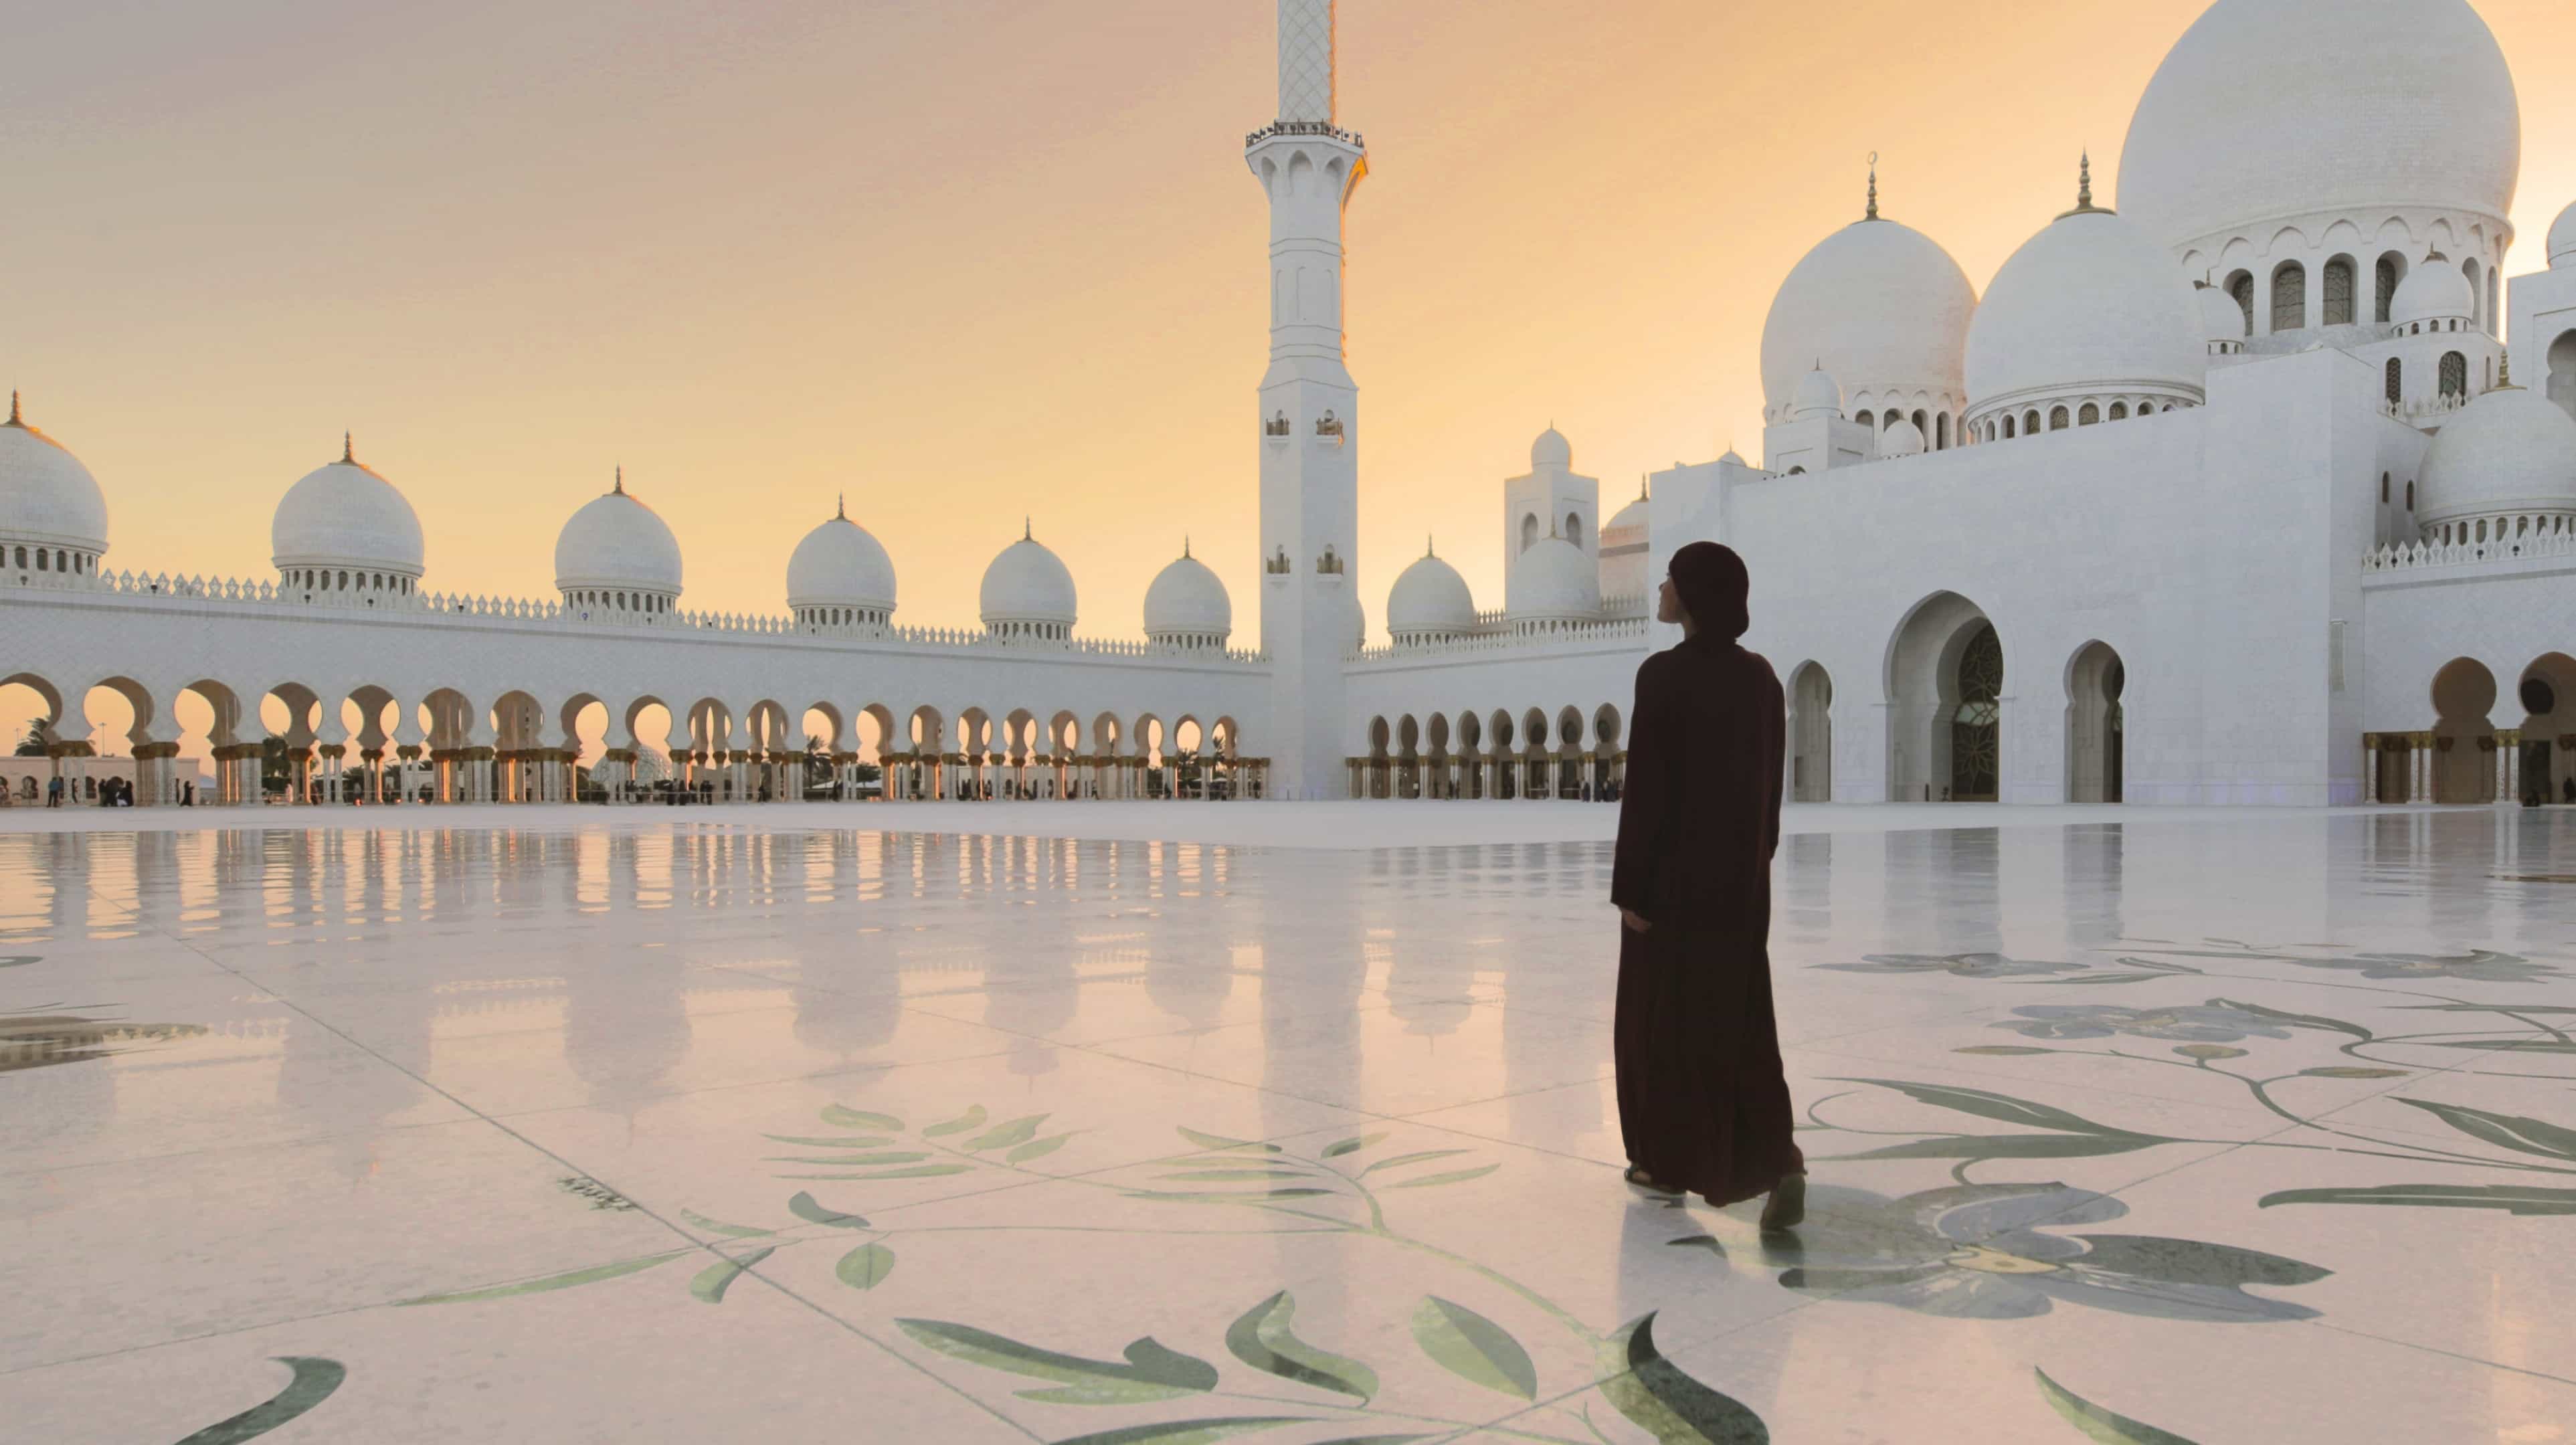 1. Visitate la Grande Moschea dello Sceicco Zayed